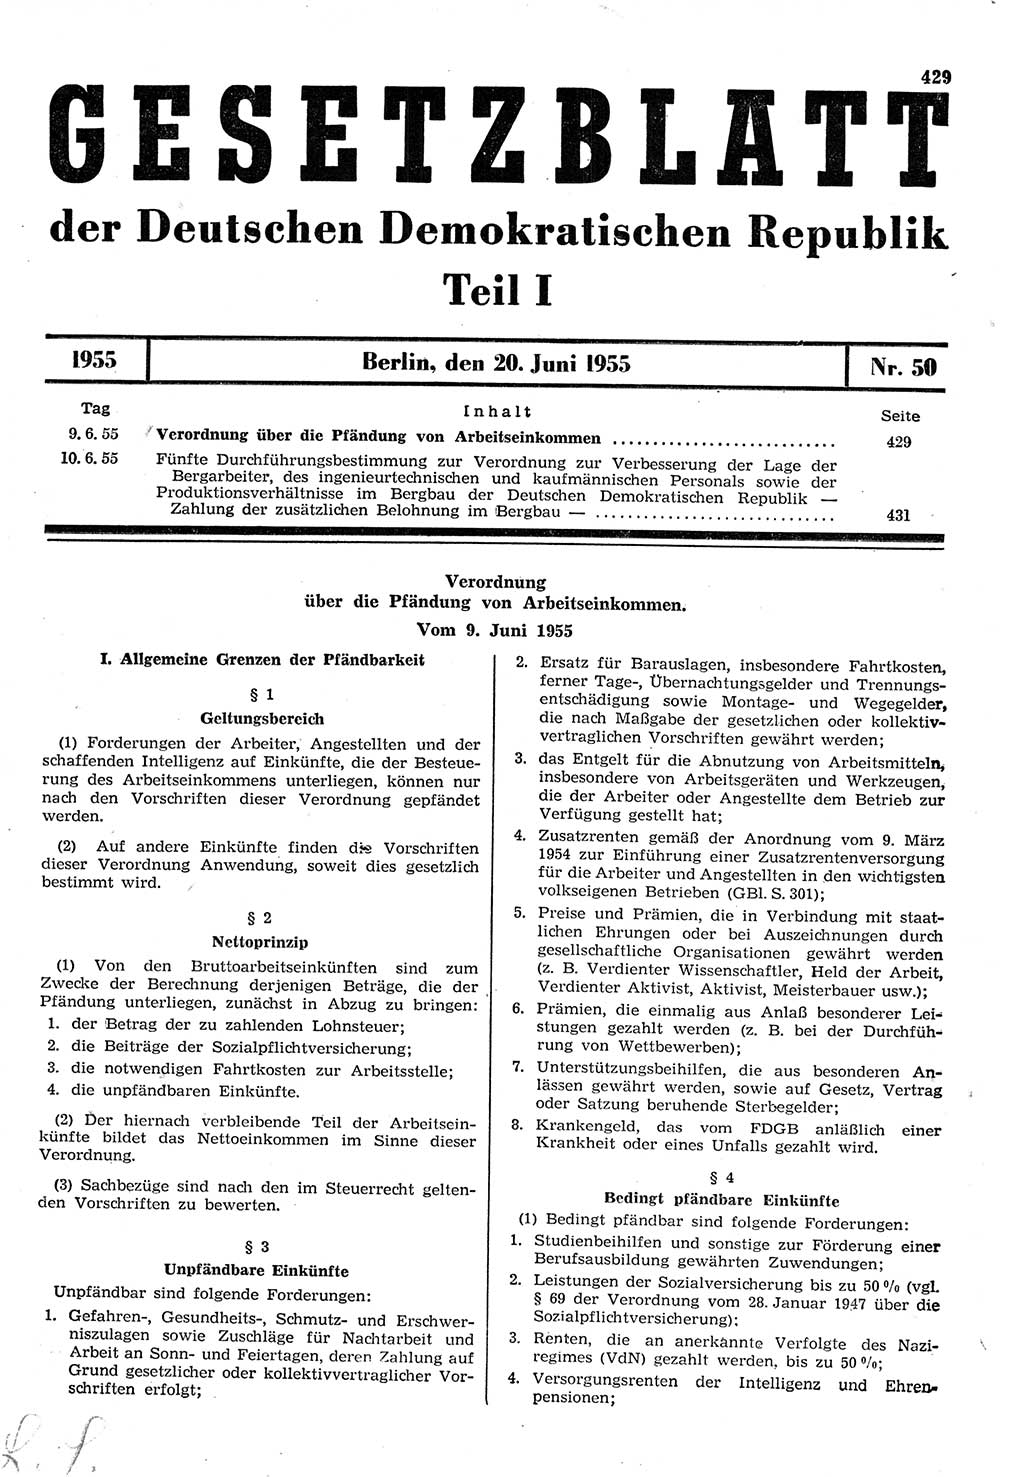 Gesetzblatt (GBl.) der Deutschen Demokratischen Republik (DDR) Teil Ⅰ 1955, Seite 429 (GBl. DDR Ⅰ 1955, S. 429)